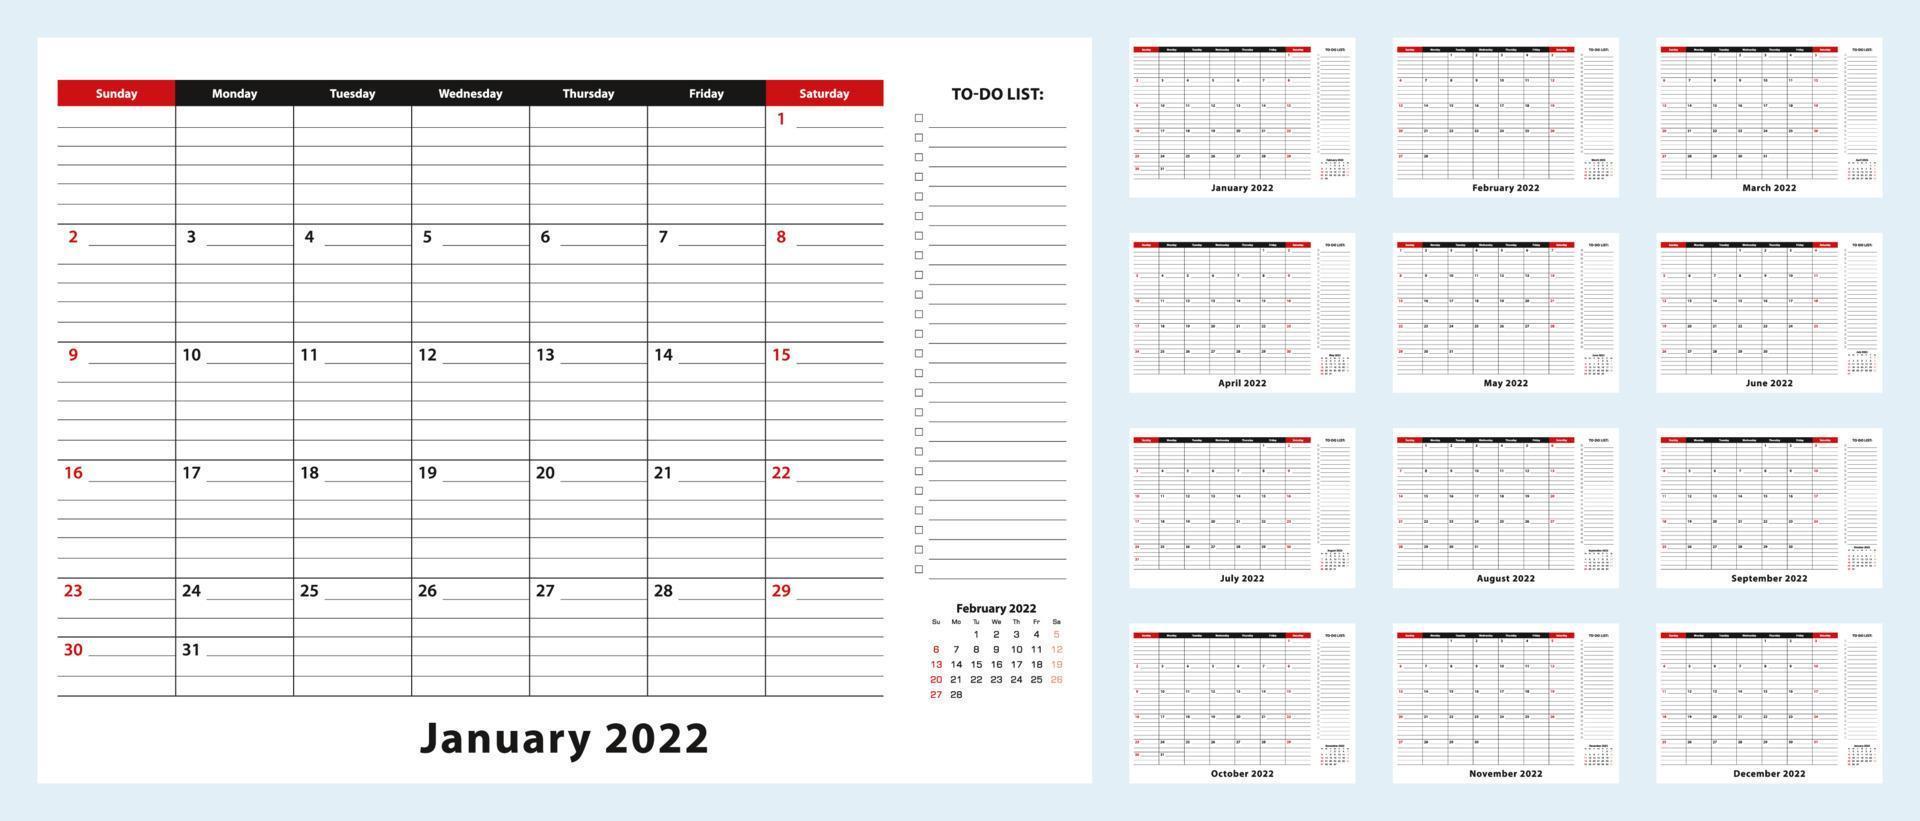 vektor månadskalender för skrivbordsunderlägg, januari 2022 - december 2022. kalenderplanerare med att göra-lista och plats för anteckningar.